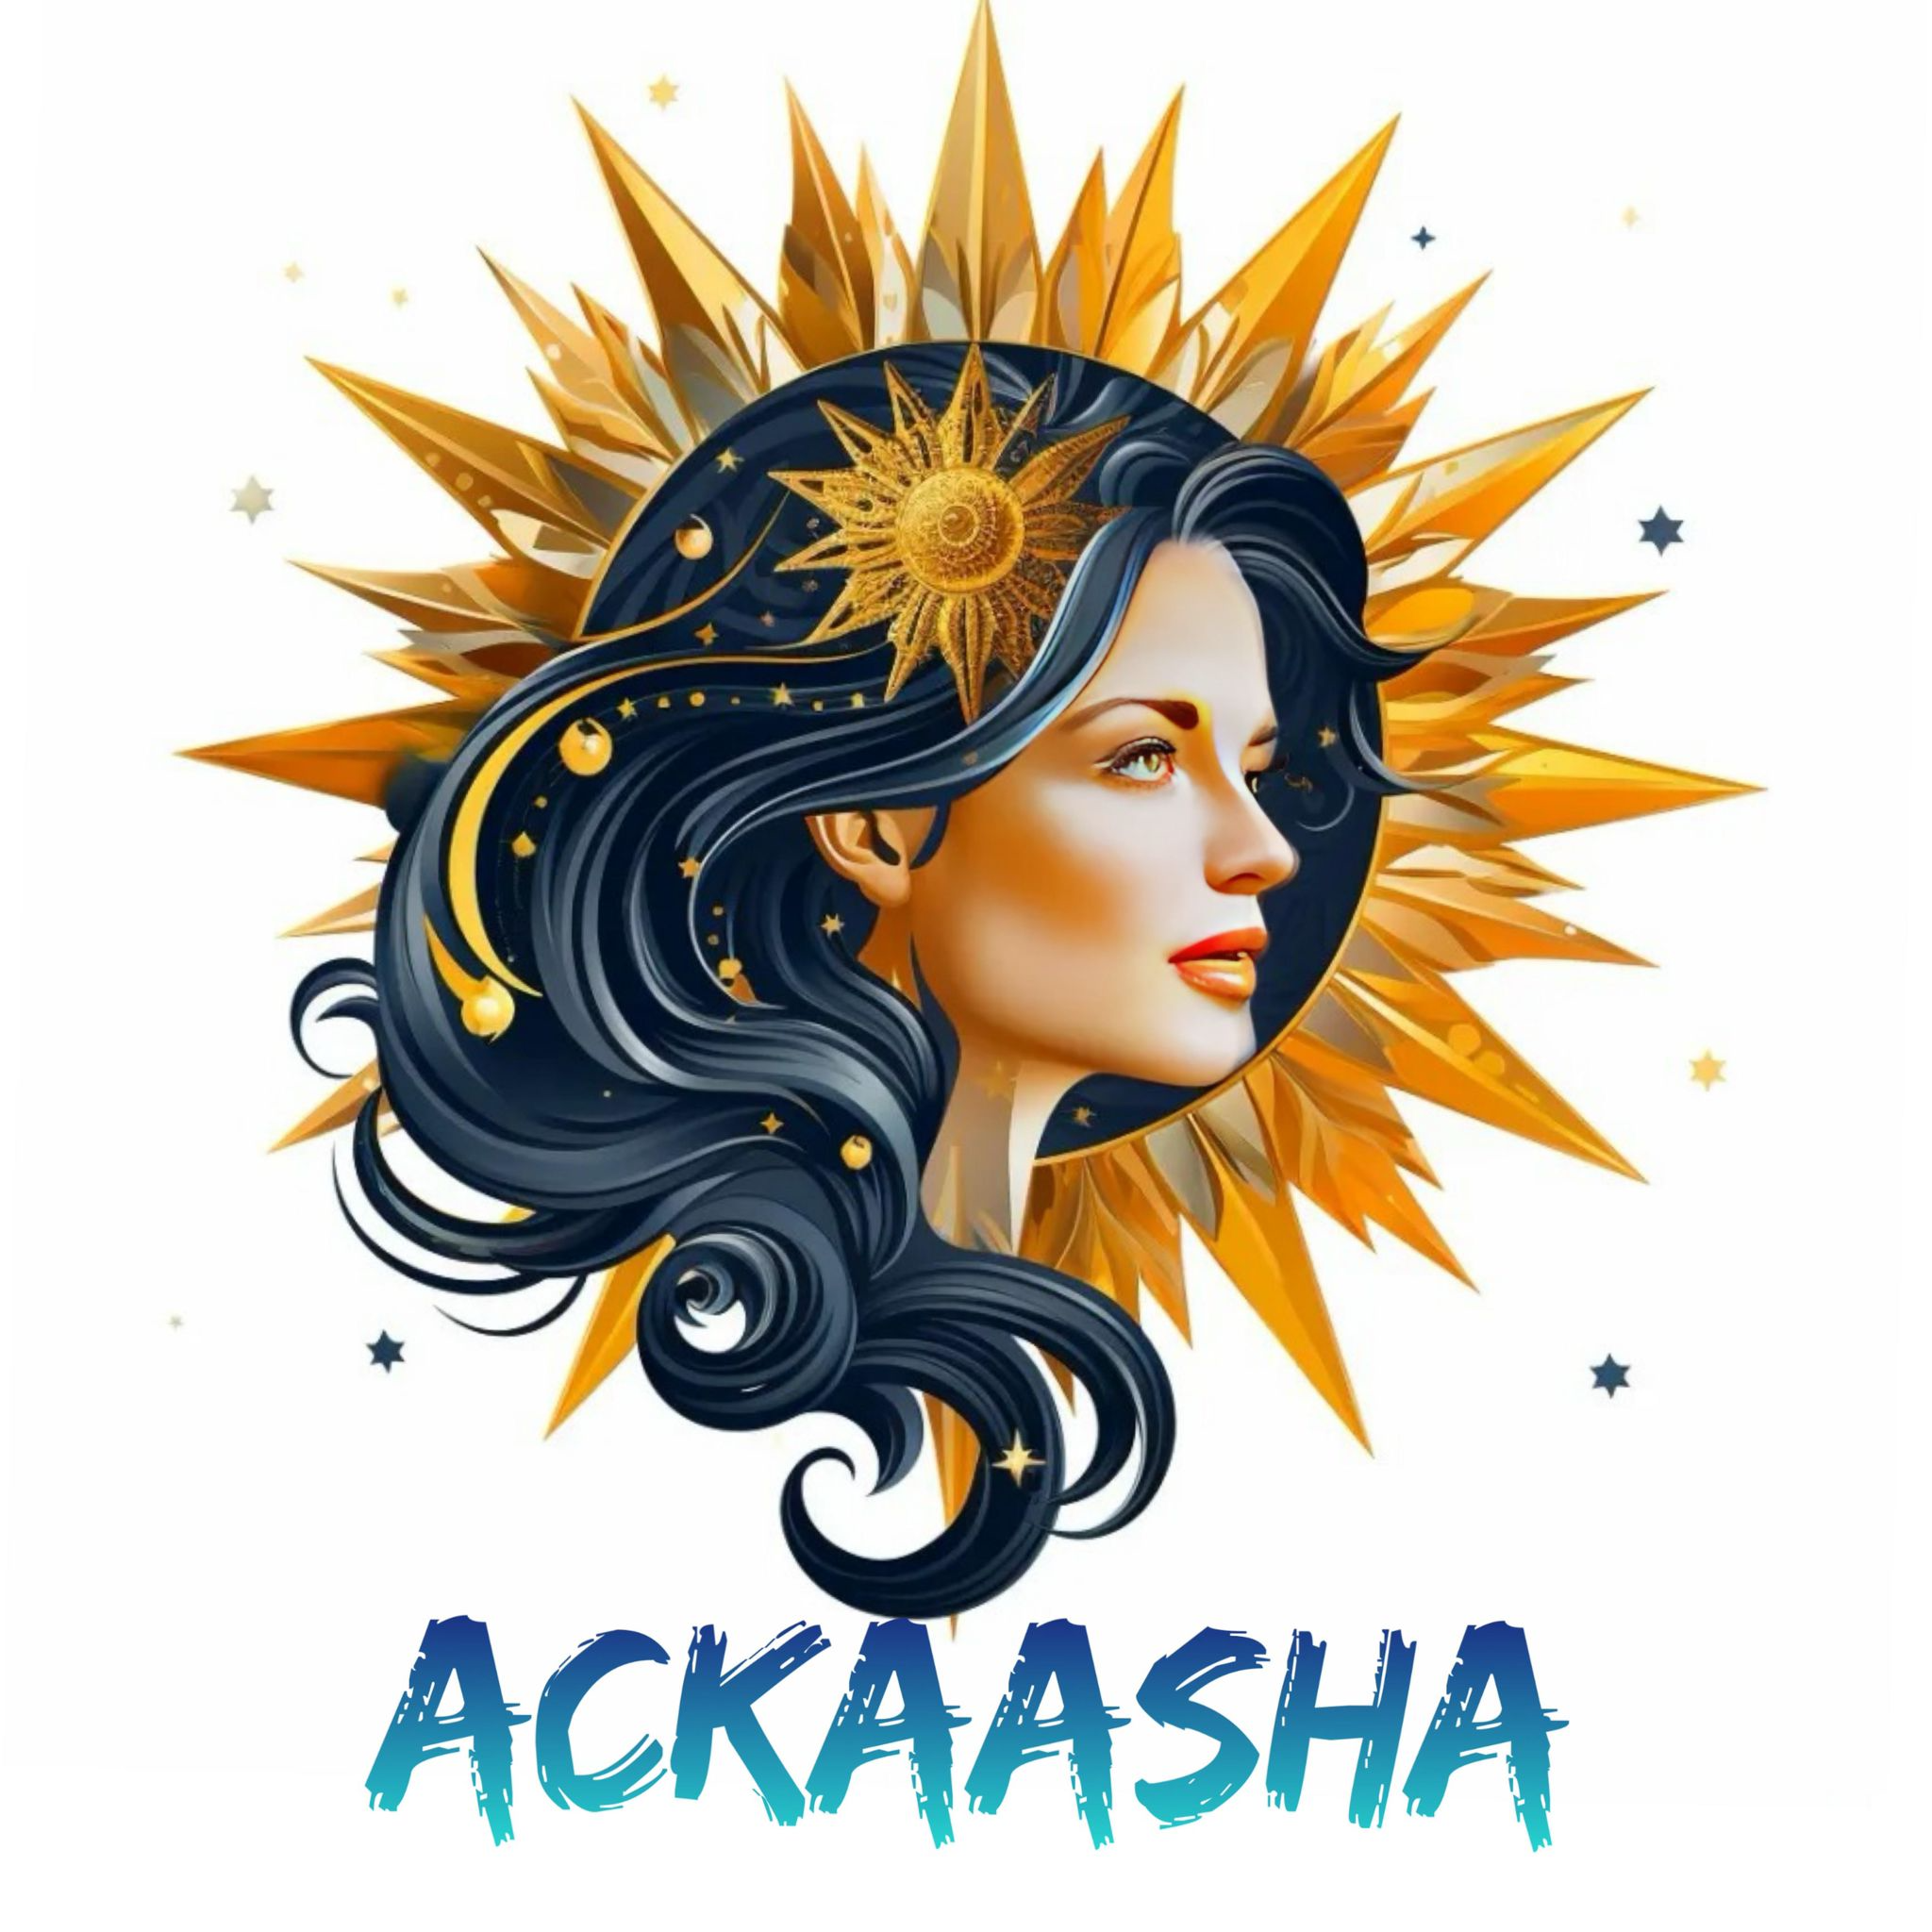 Ackaasha